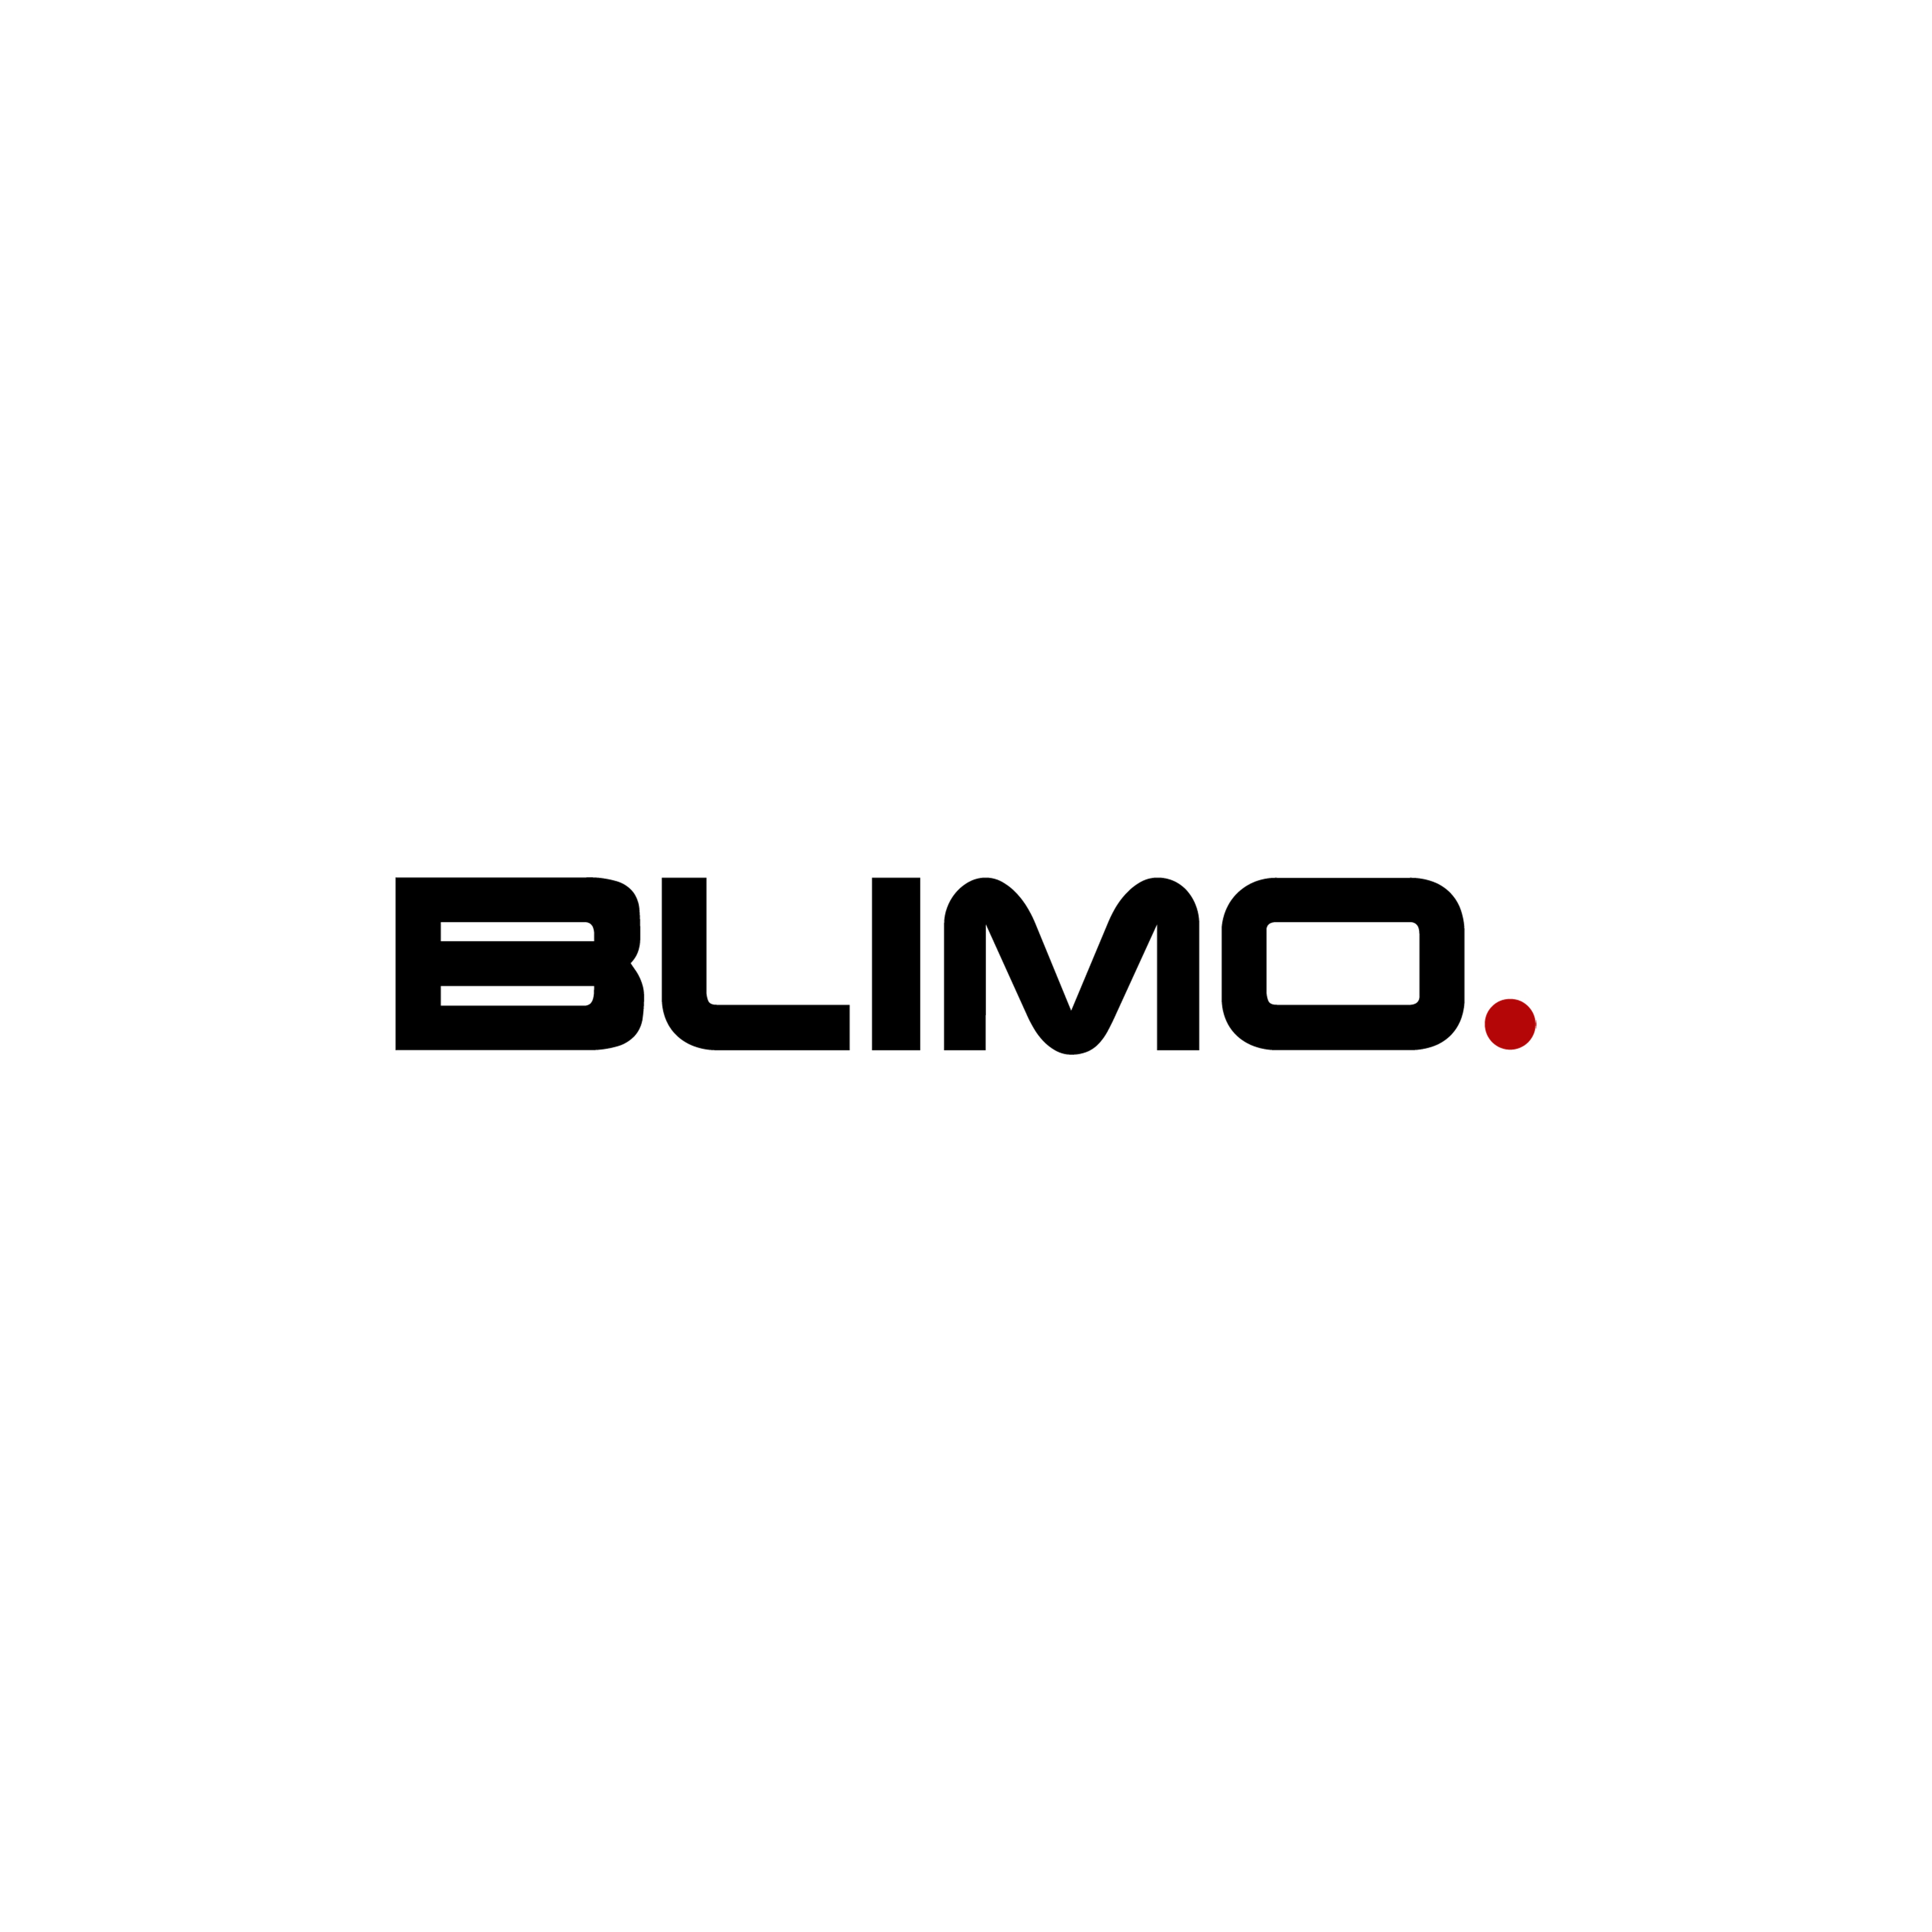 Blinkersglas till Blimo Moto/Moto Sport - Vänster